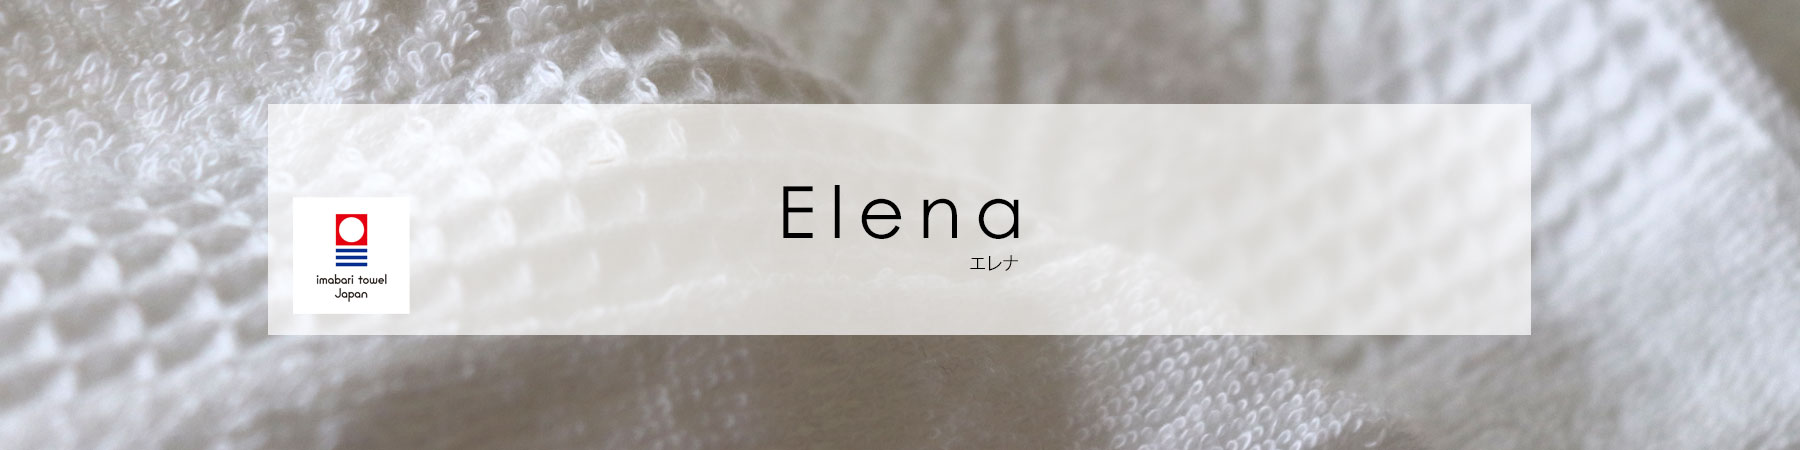 エレナ